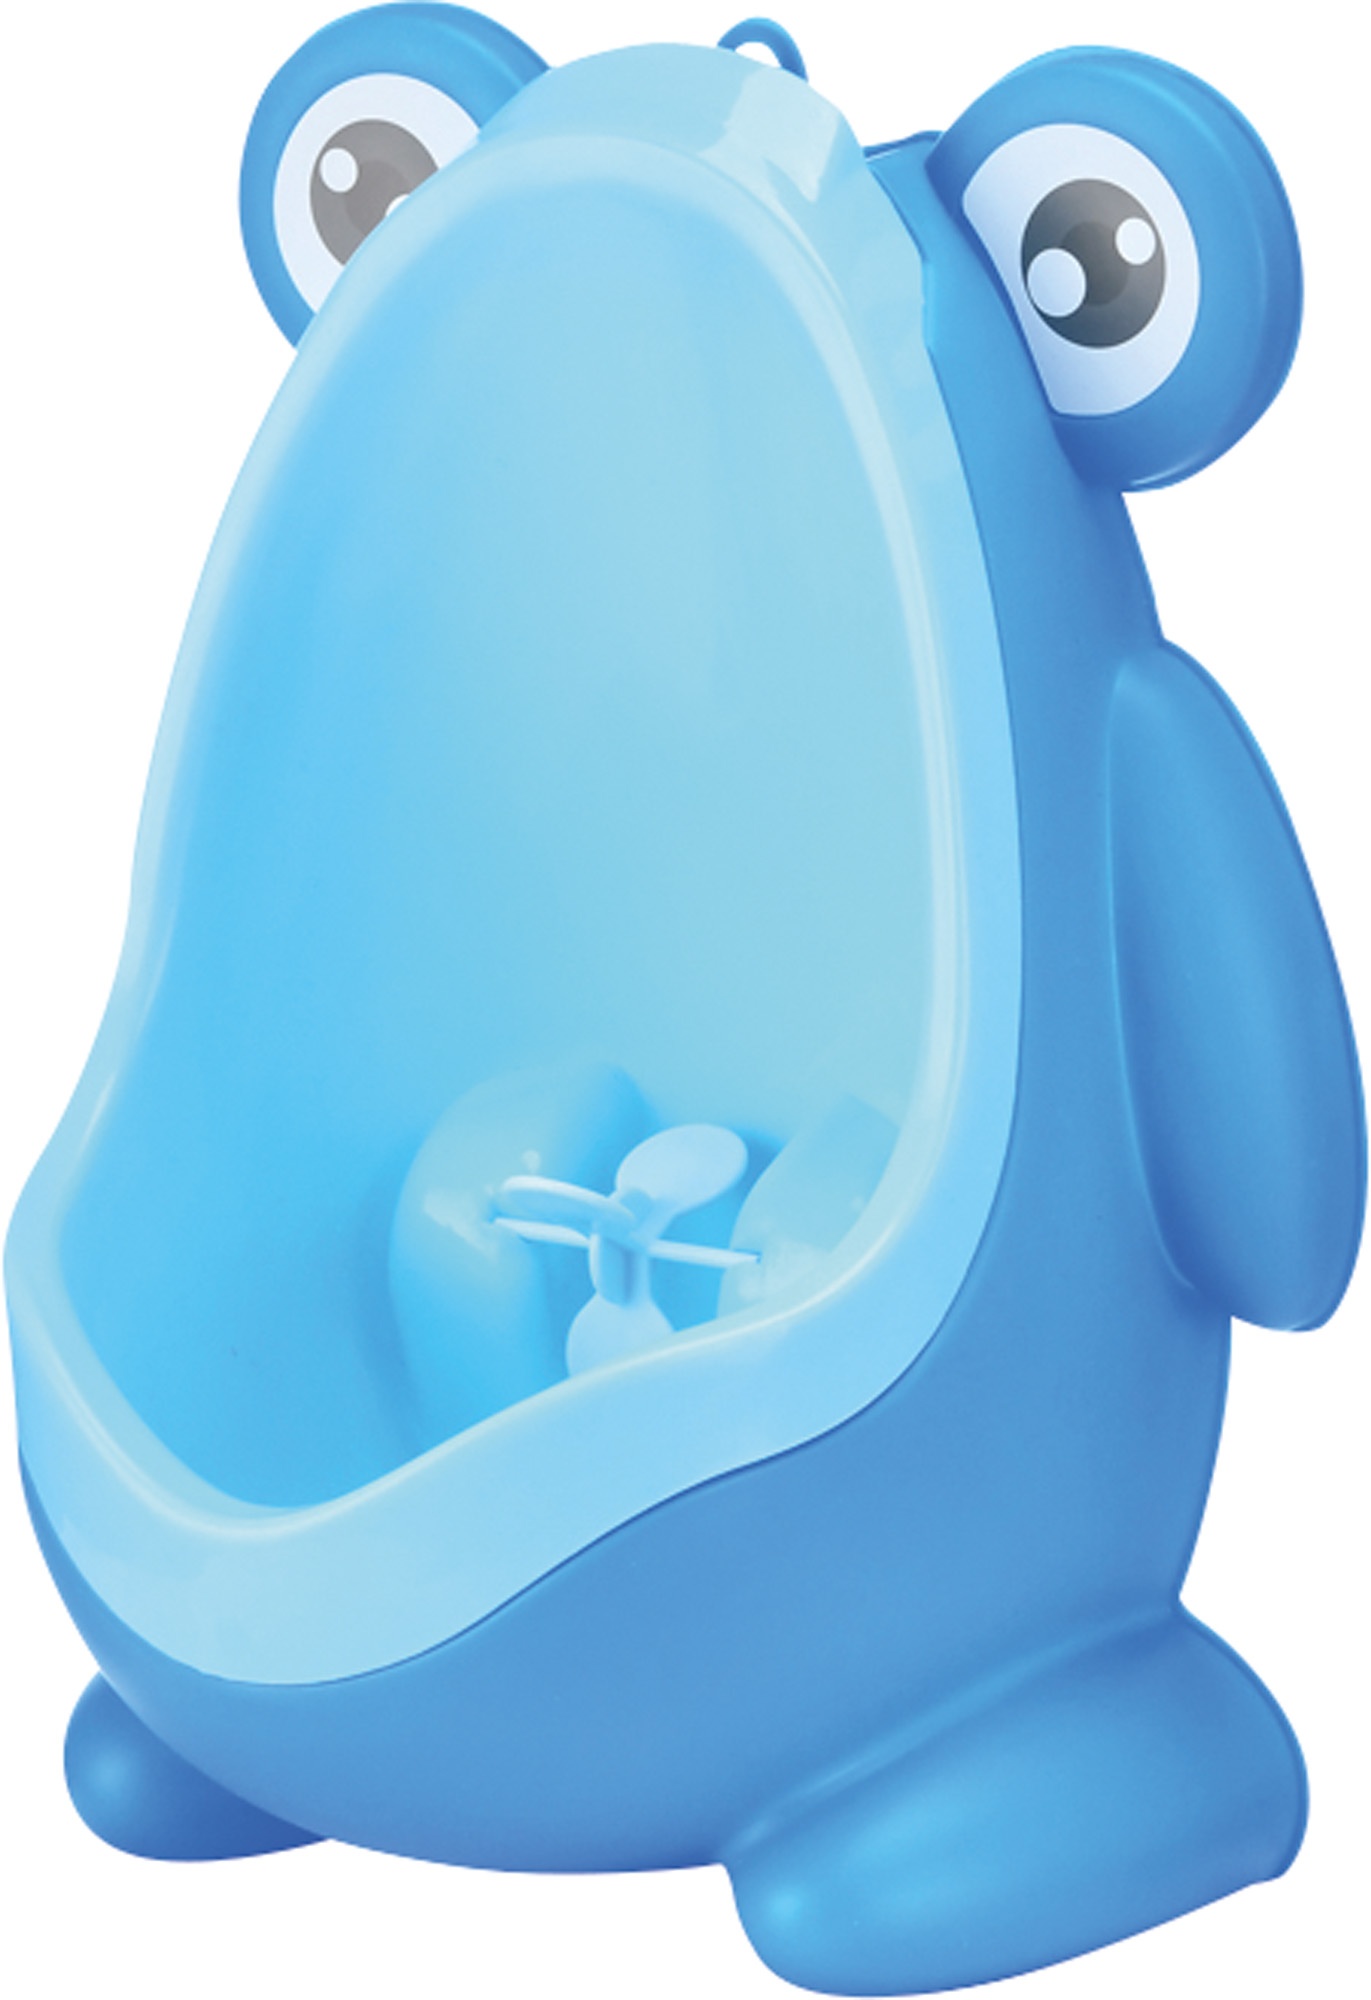 Фотография 1 товарной позиции интернет-магазина детских игрушек www.smarttoys.com.ua Горщик дитячий для хлопчика FreeON Happy Frog Blue